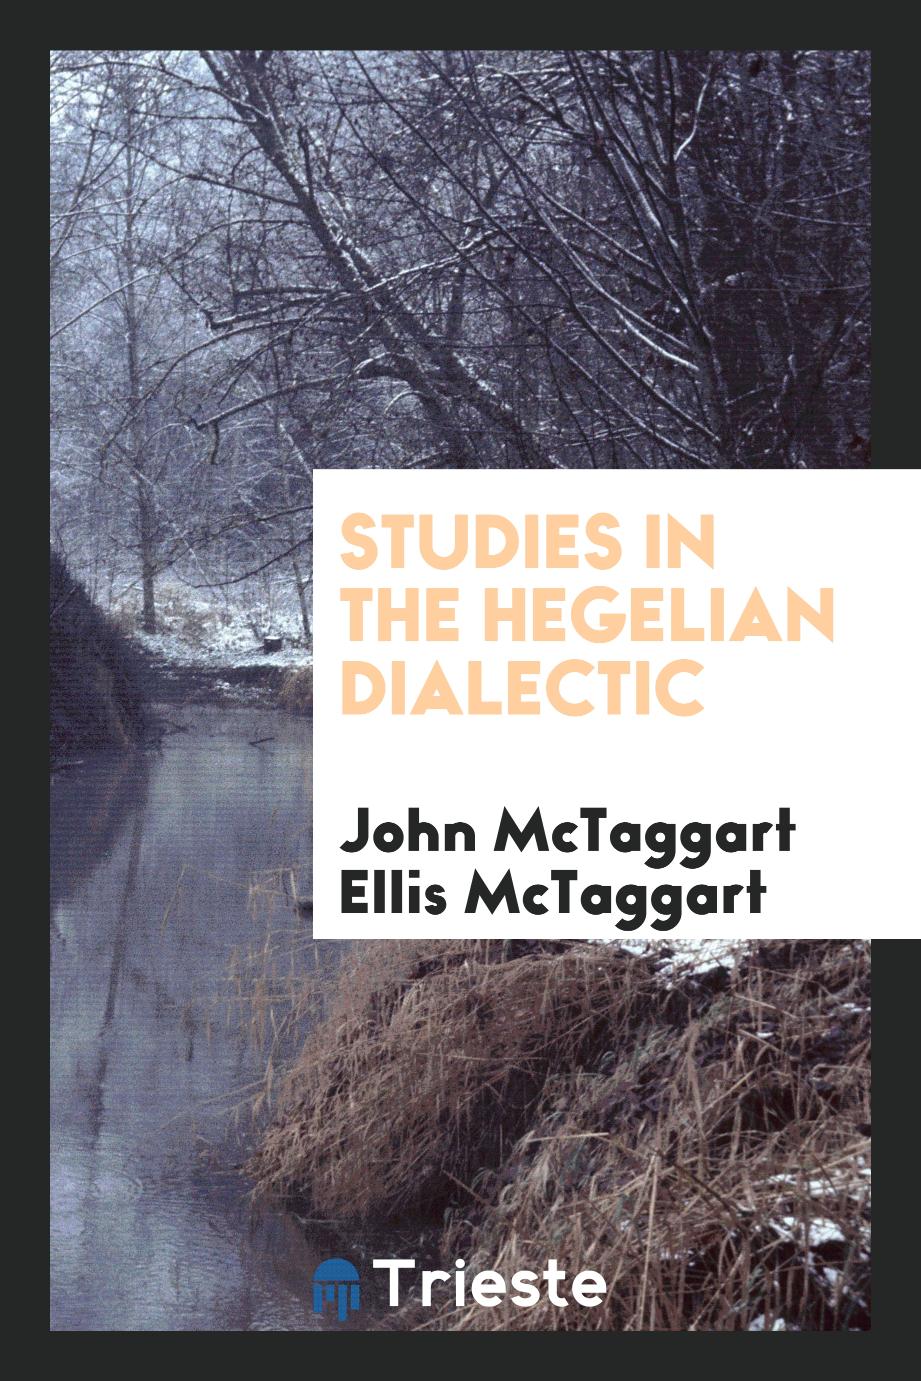 Studies in the Hegelian dialectic